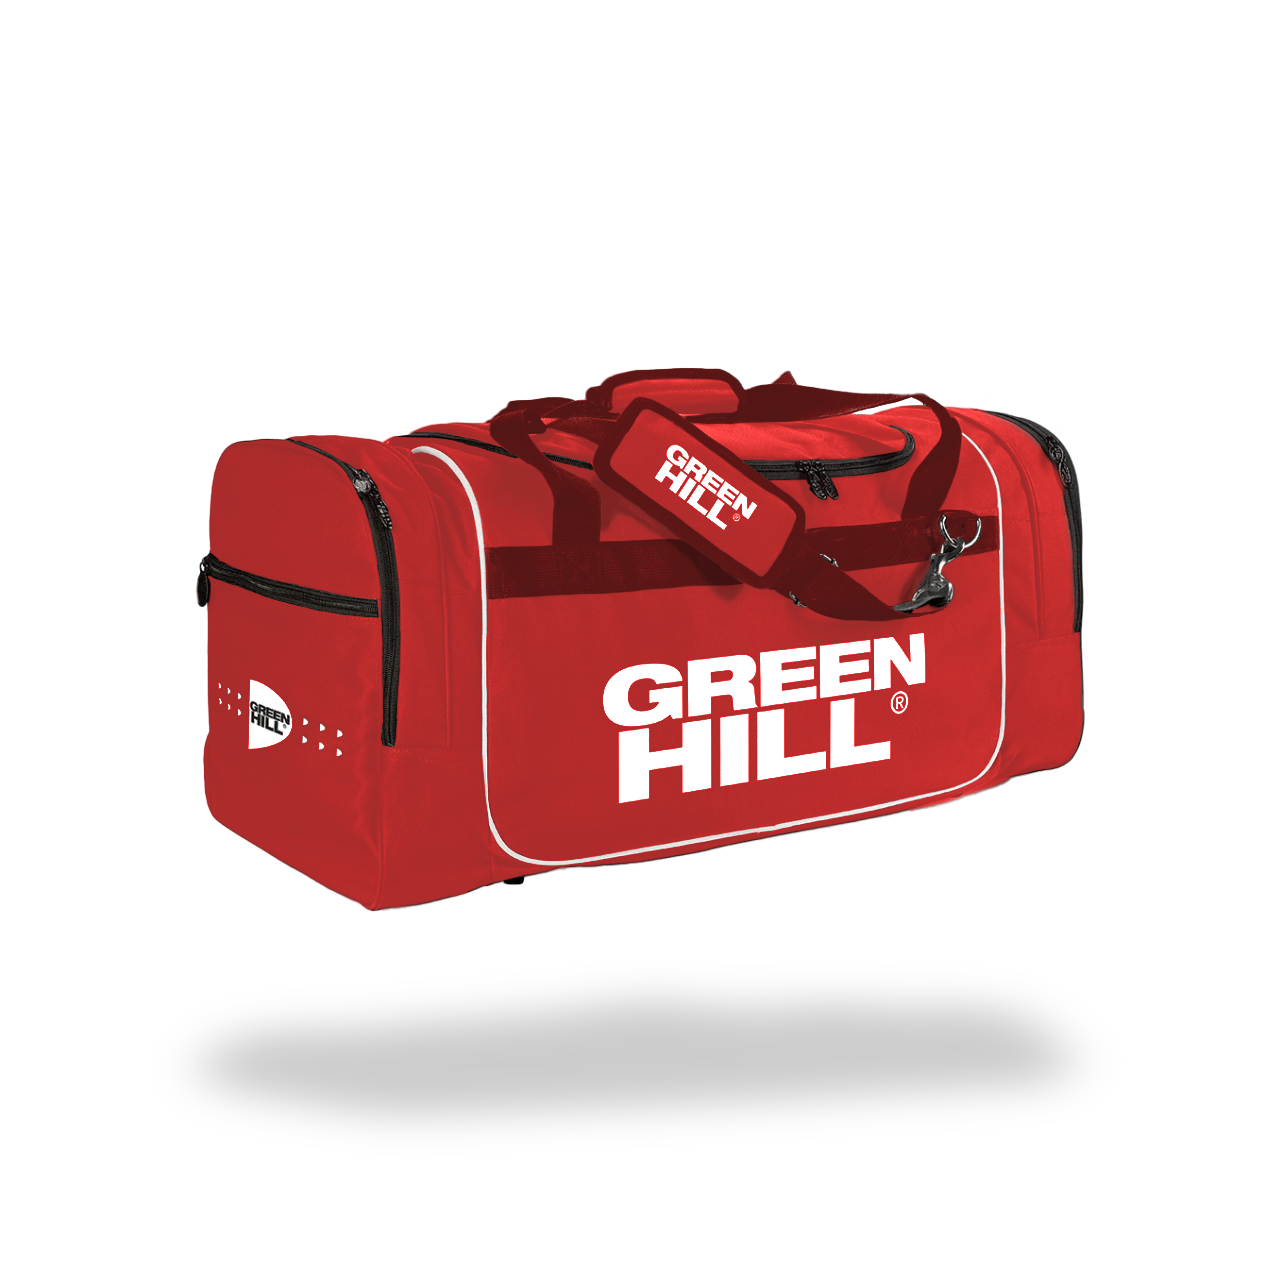 Green Hill Judotrainingstasche in Rot mit Stauraum für die gesamte Trainingsausrüstung. 2 zusätzlichen seitlichen Reißverschlusstaschen. Unterschiedlichen Größen.